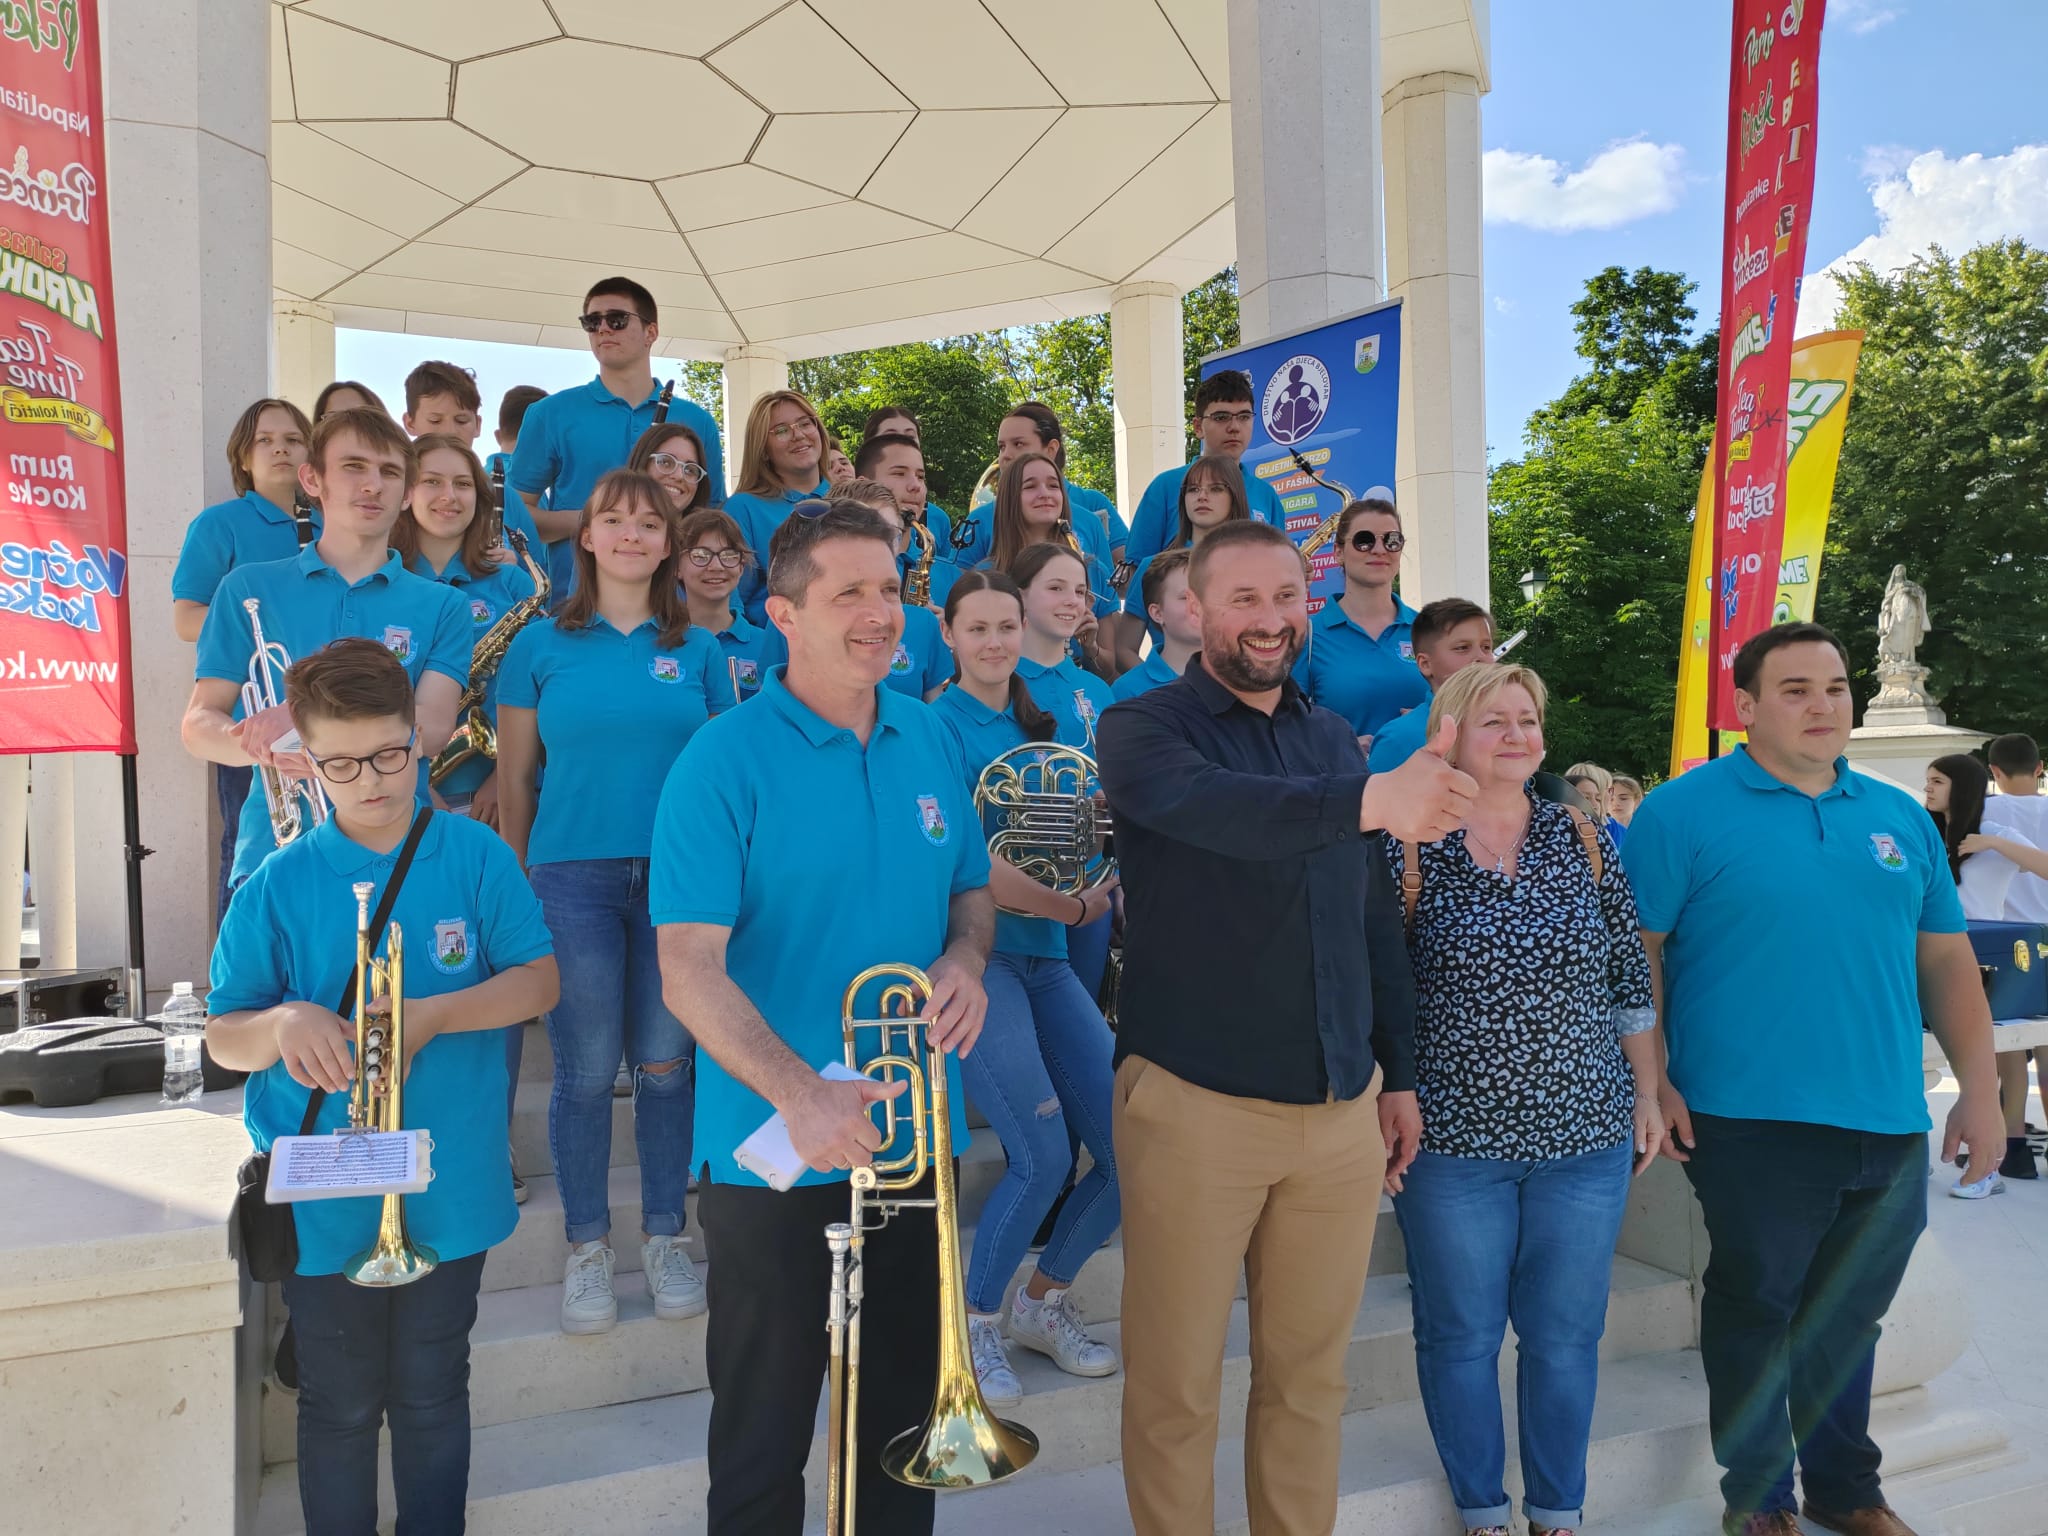 Mladi glazbenici vraćaju staru slavu Puhačkom orkestru Bjelovar!